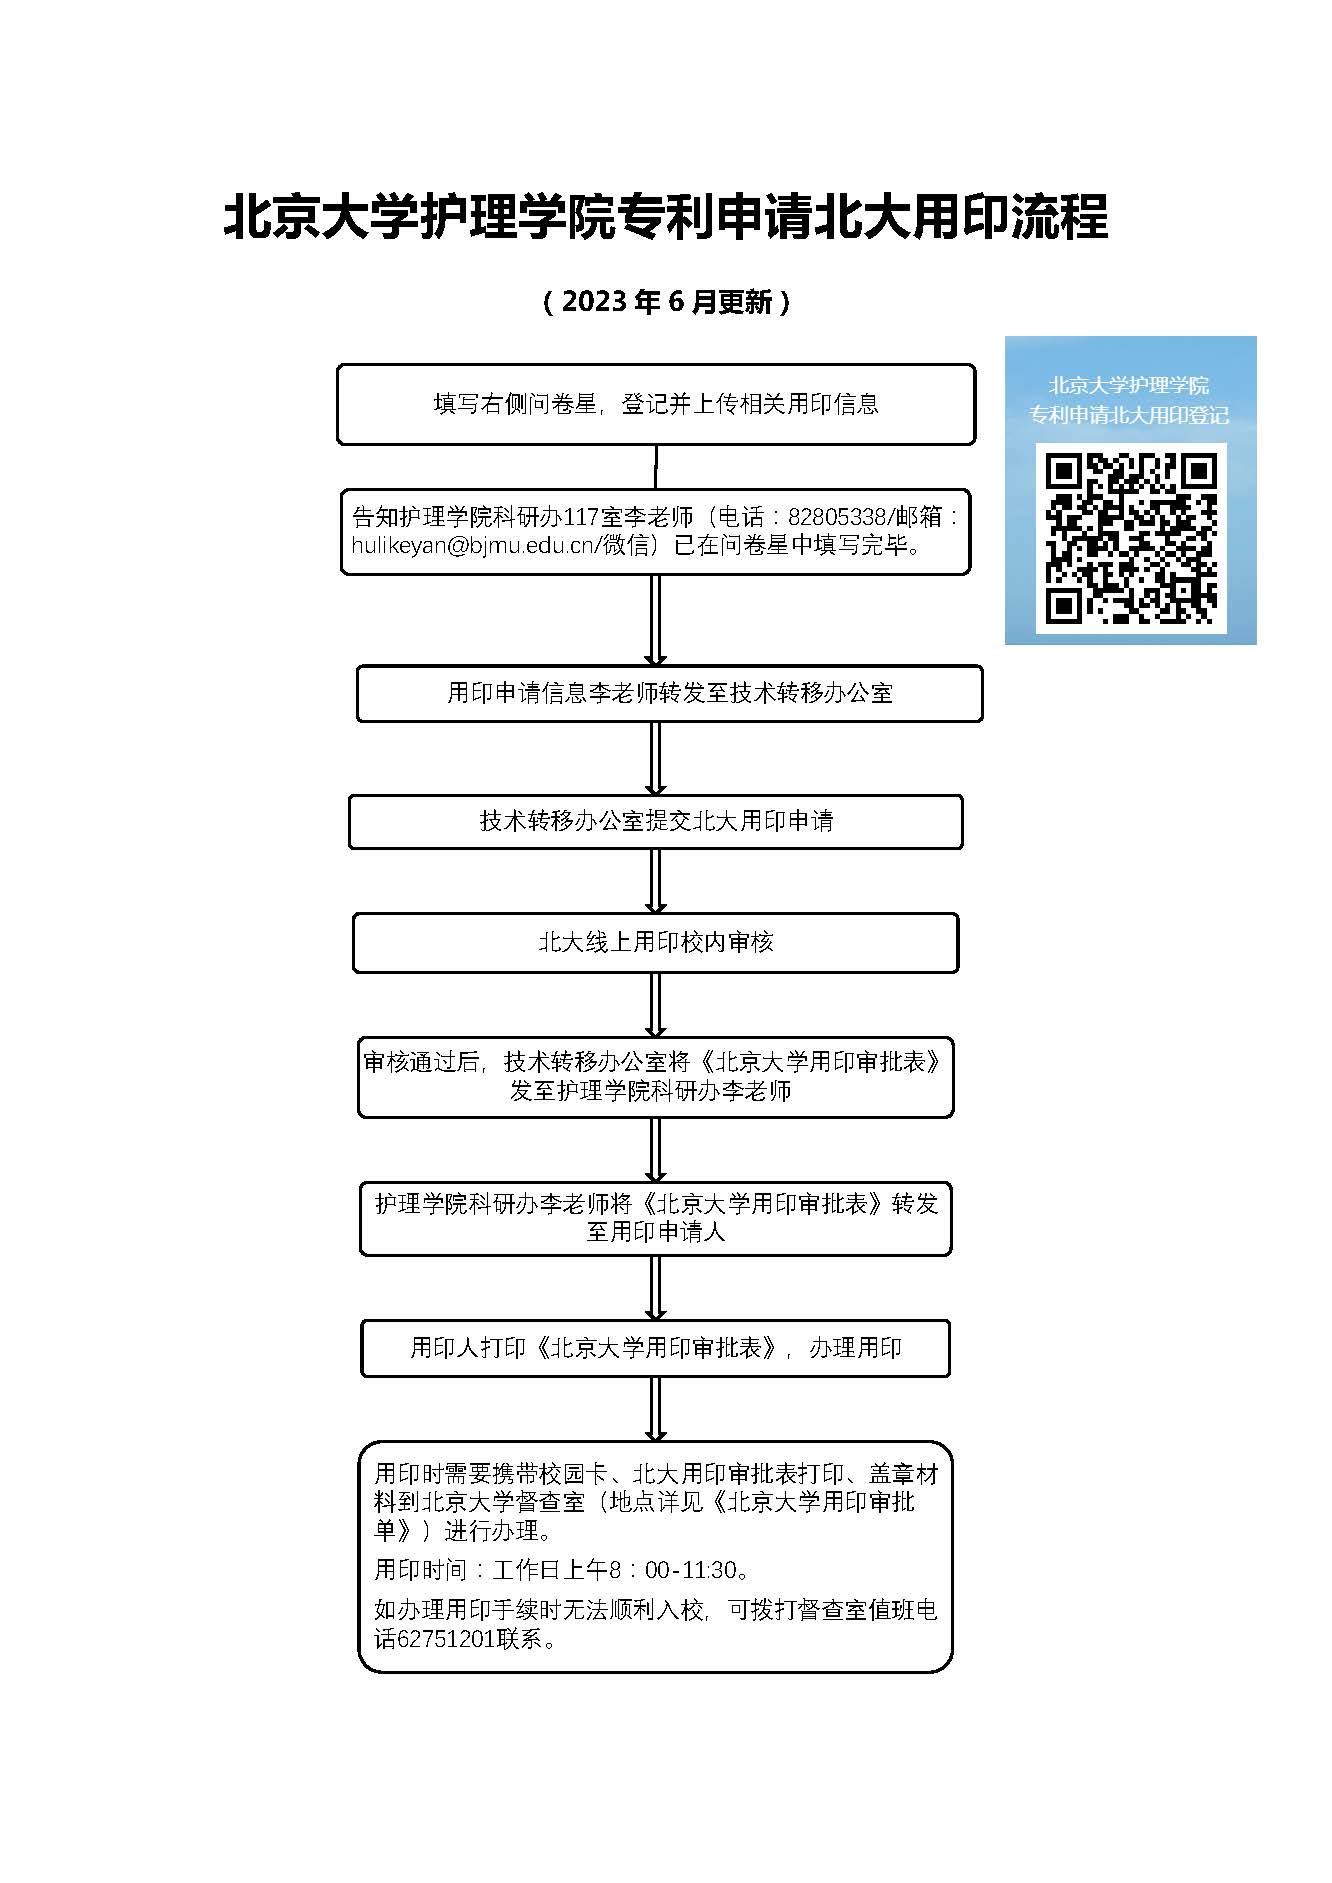 北京大学护理学院专利申请北大用印流程.jpg